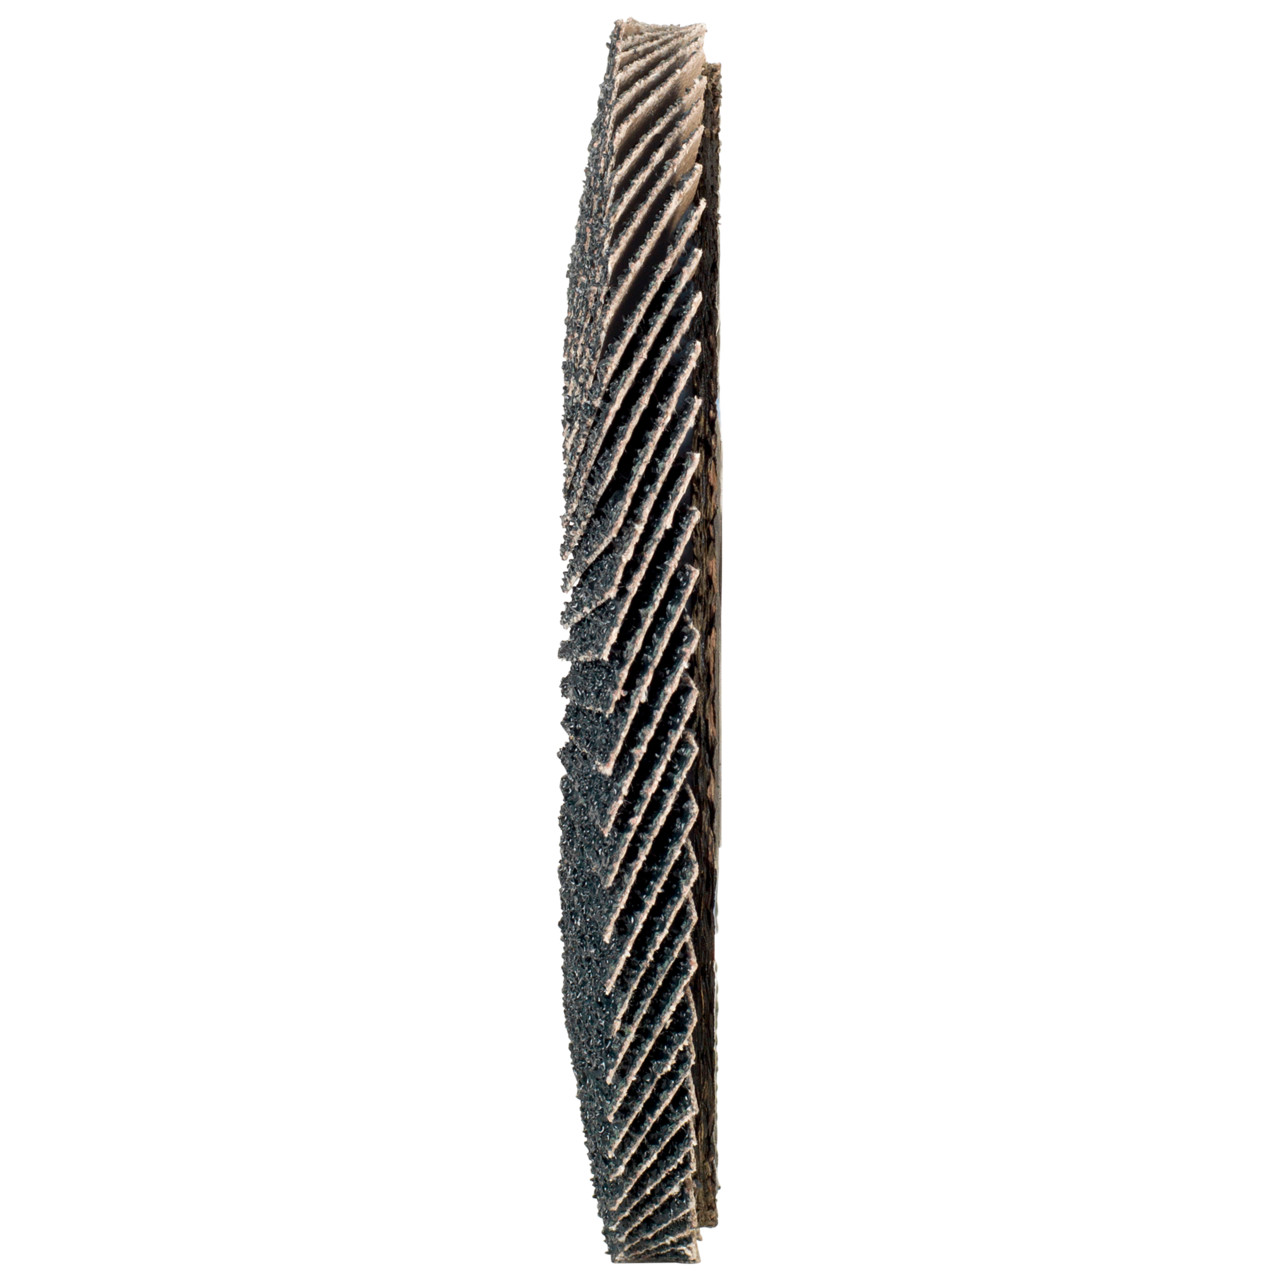 Tyrolit Arandela dentada DxH 115x22,2 2en1 para acero y acero inoxidable, P80, forma: 28A - versión recta (versión con cuerpo de soporte de fibra de vidrio), Art. 668691